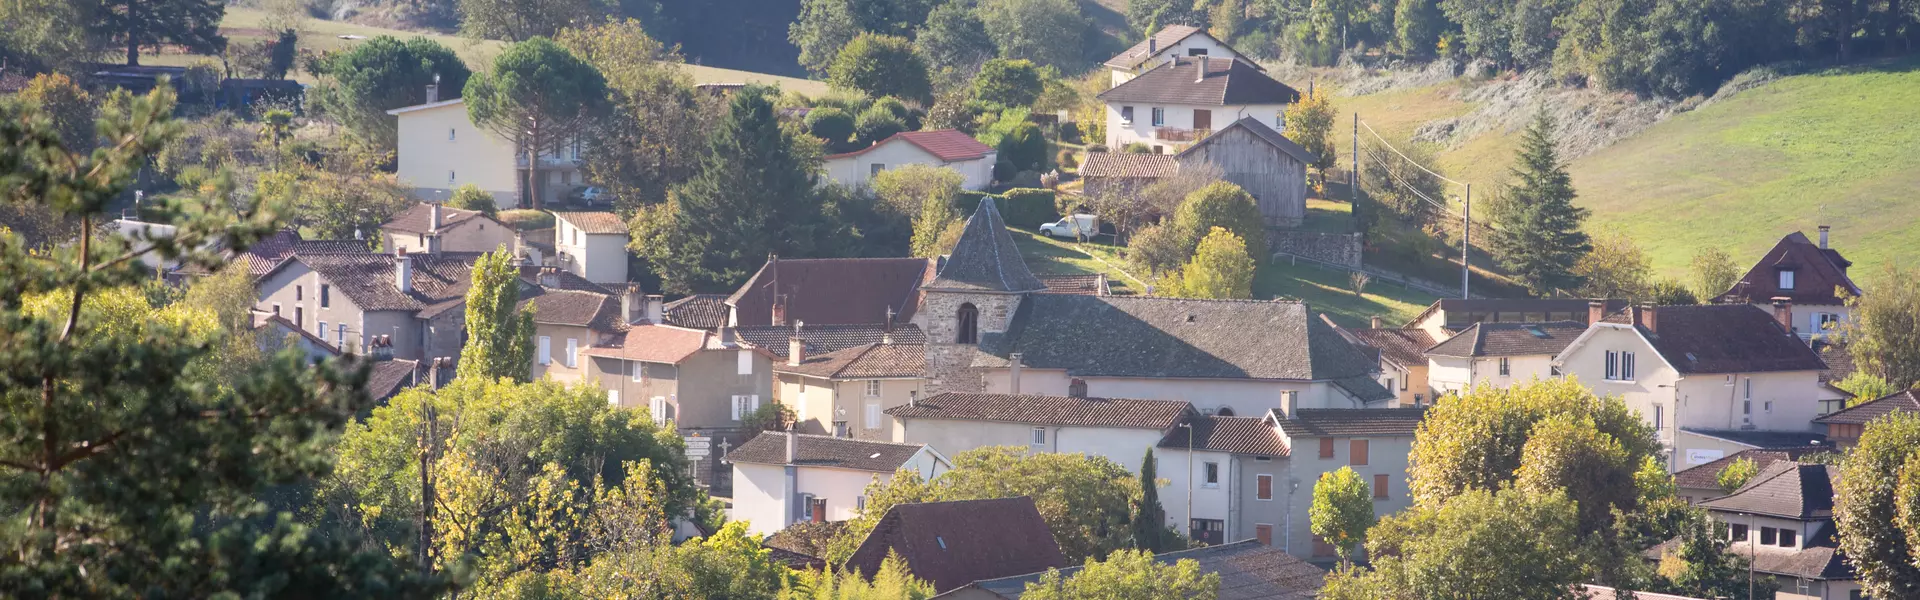 Le mot du maire de la commune de Saint-Constant Fournoulès (15) Cantal